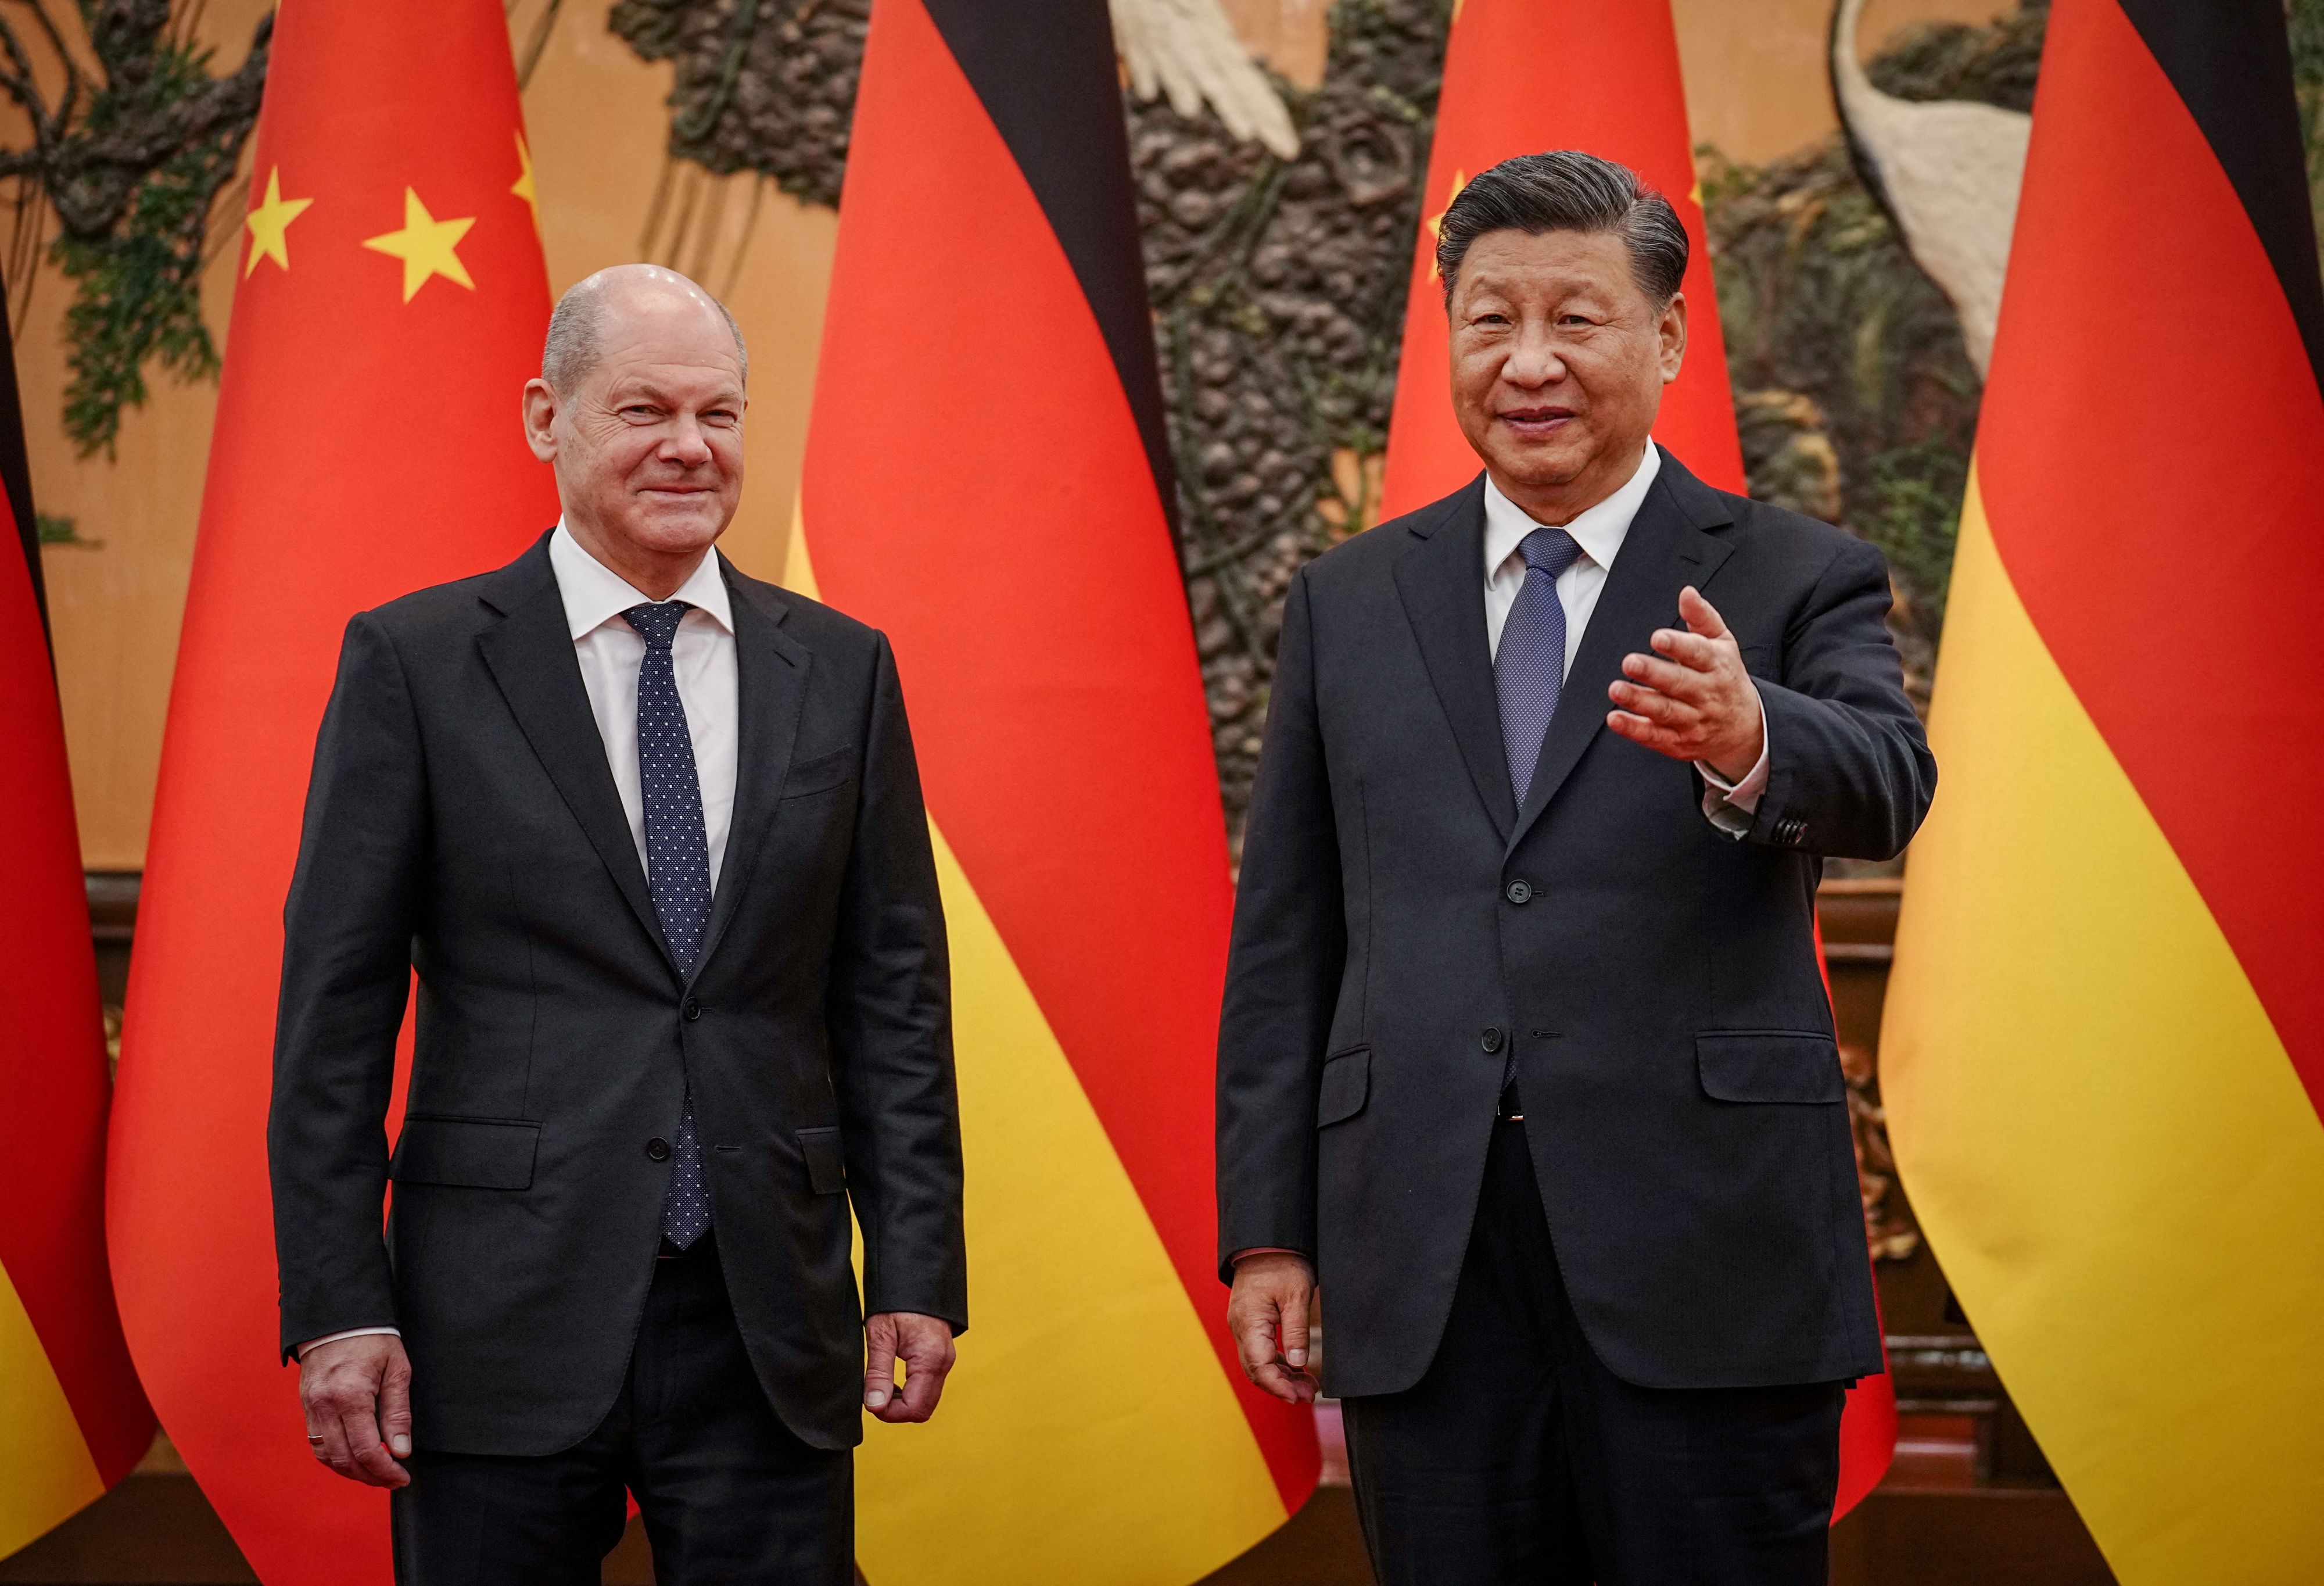 Olaf Scholz et Xi Jinping soutiennent la conférence en Suisse sur la paix